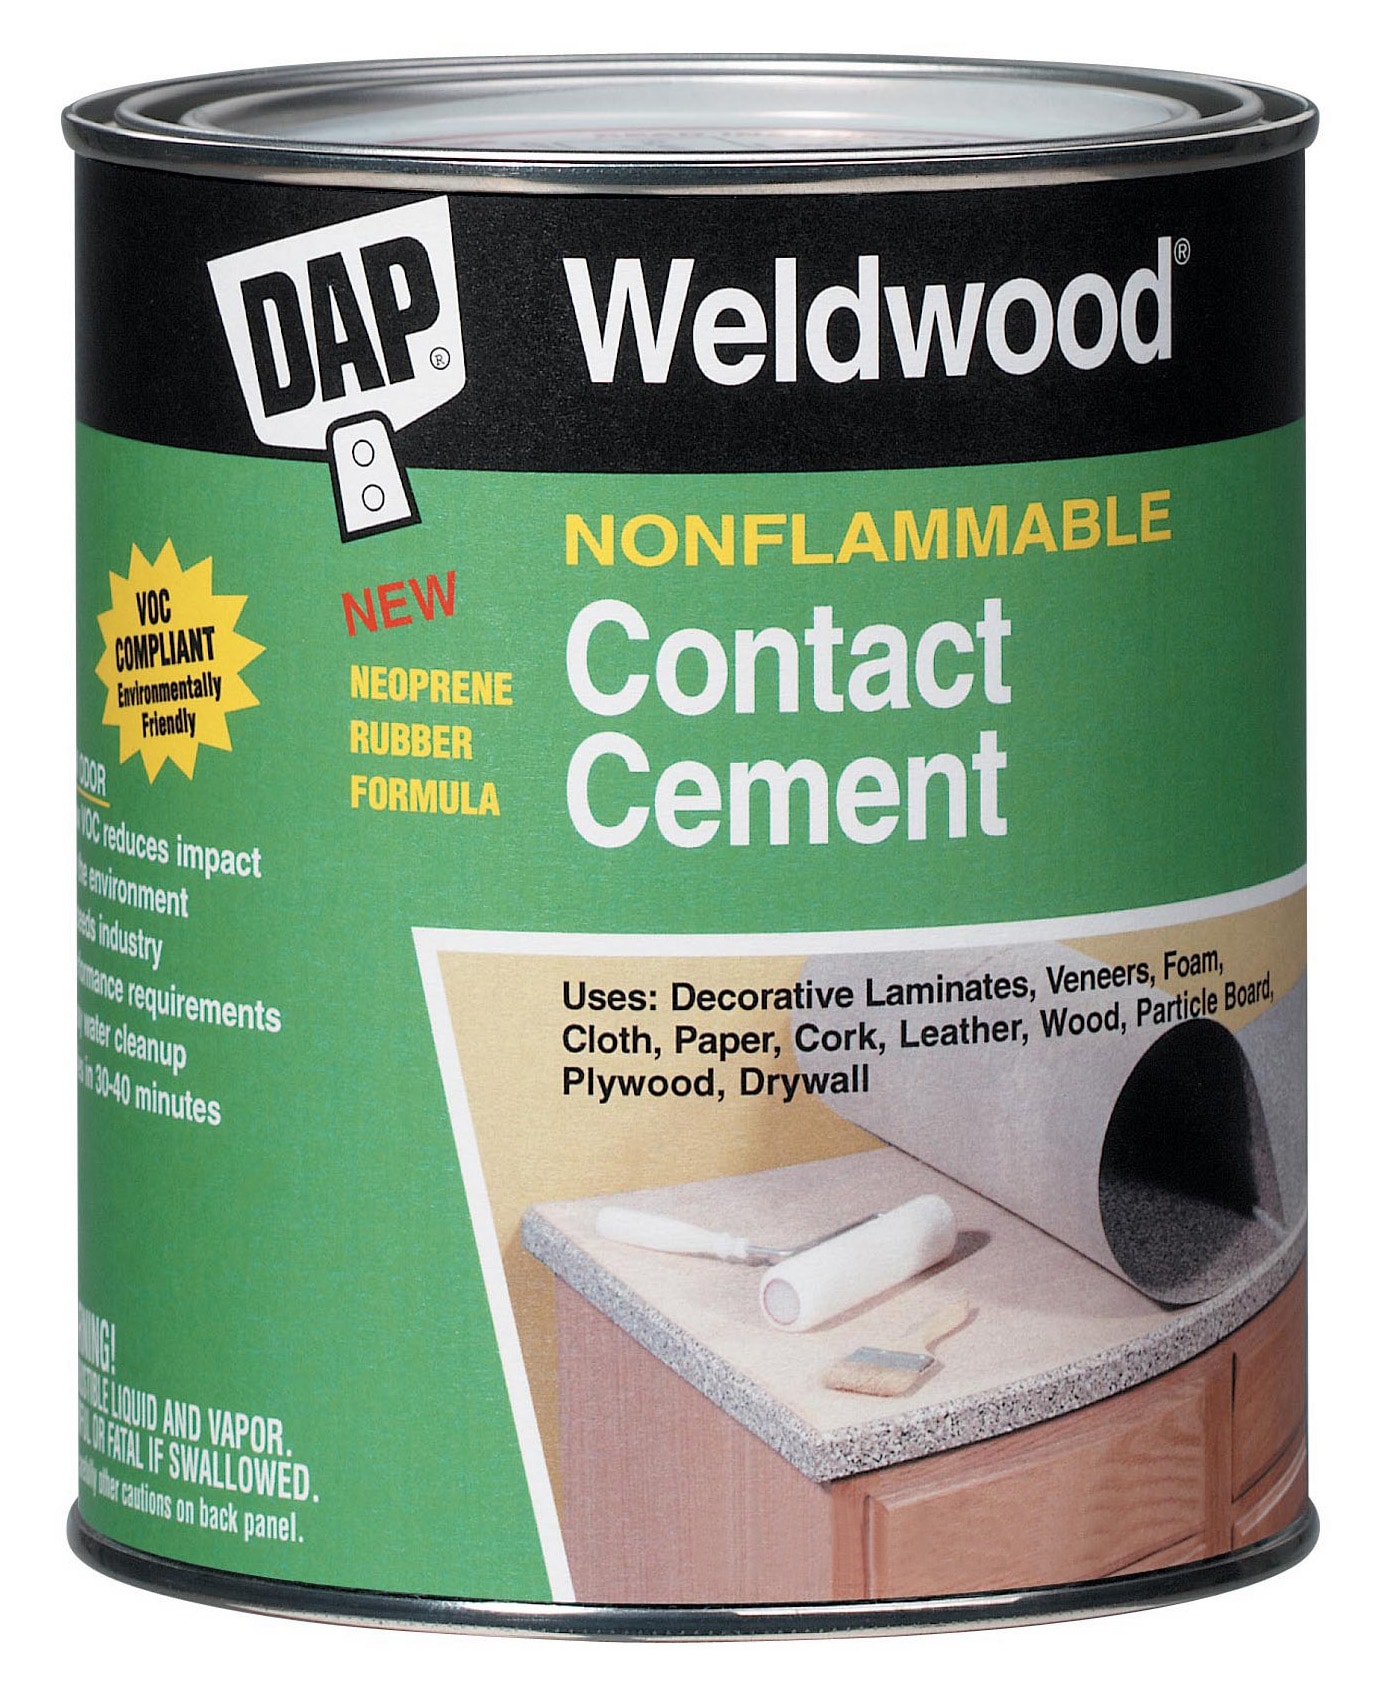 Weldwood 3 fl oz Contact Cement by DAP at Fleet Farm